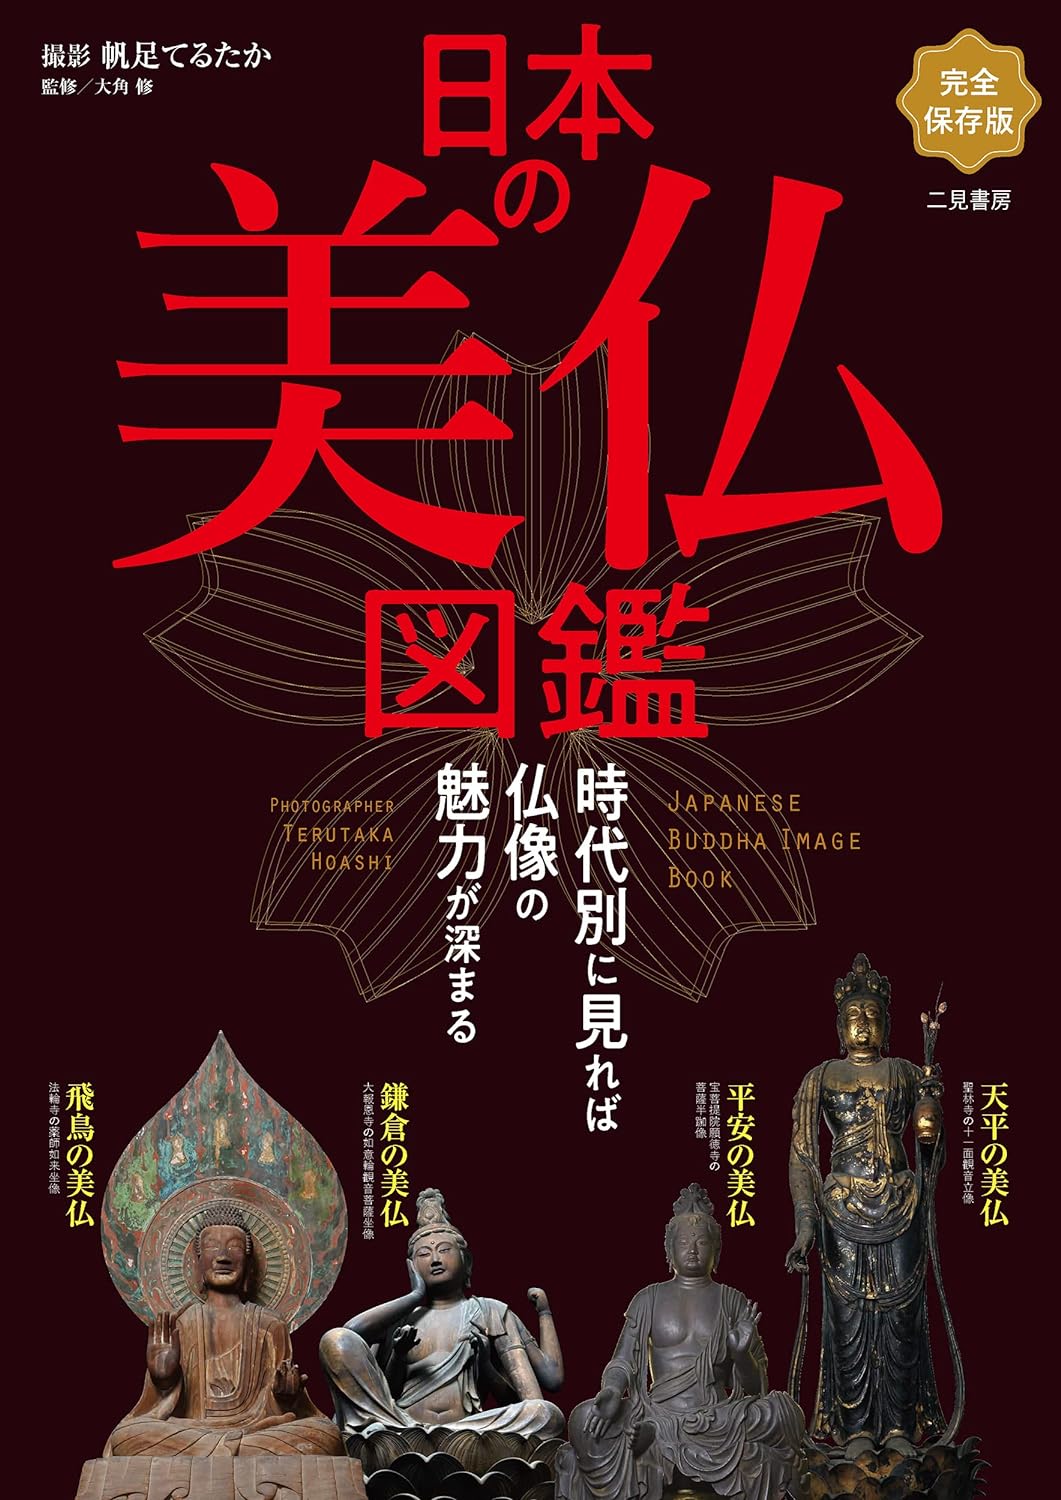 Japanese Buddha Image Book (Nihon no Bibutsu Zukan) 